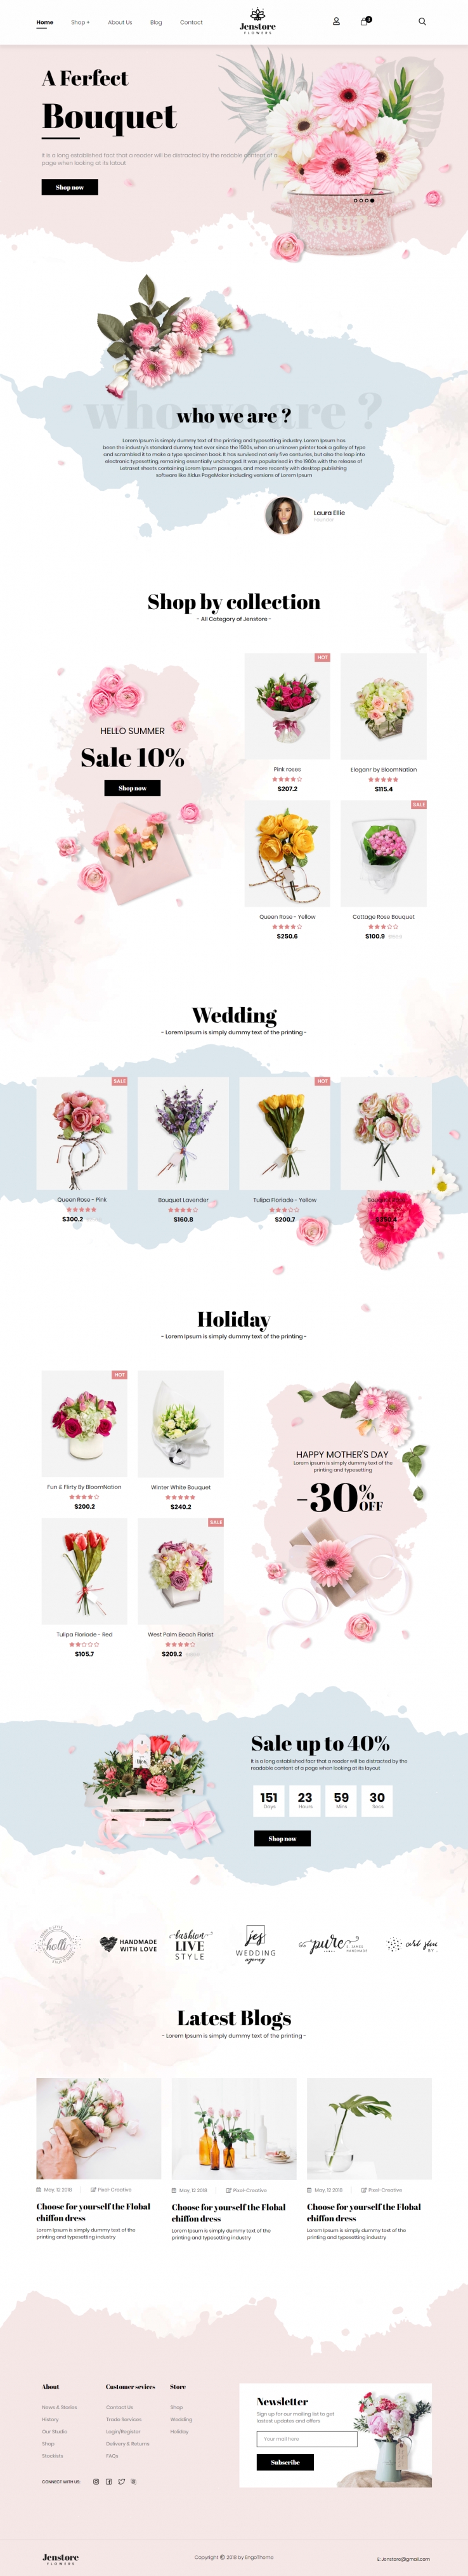 黑色欧美风格的网上鲜花店整站网站源码下载